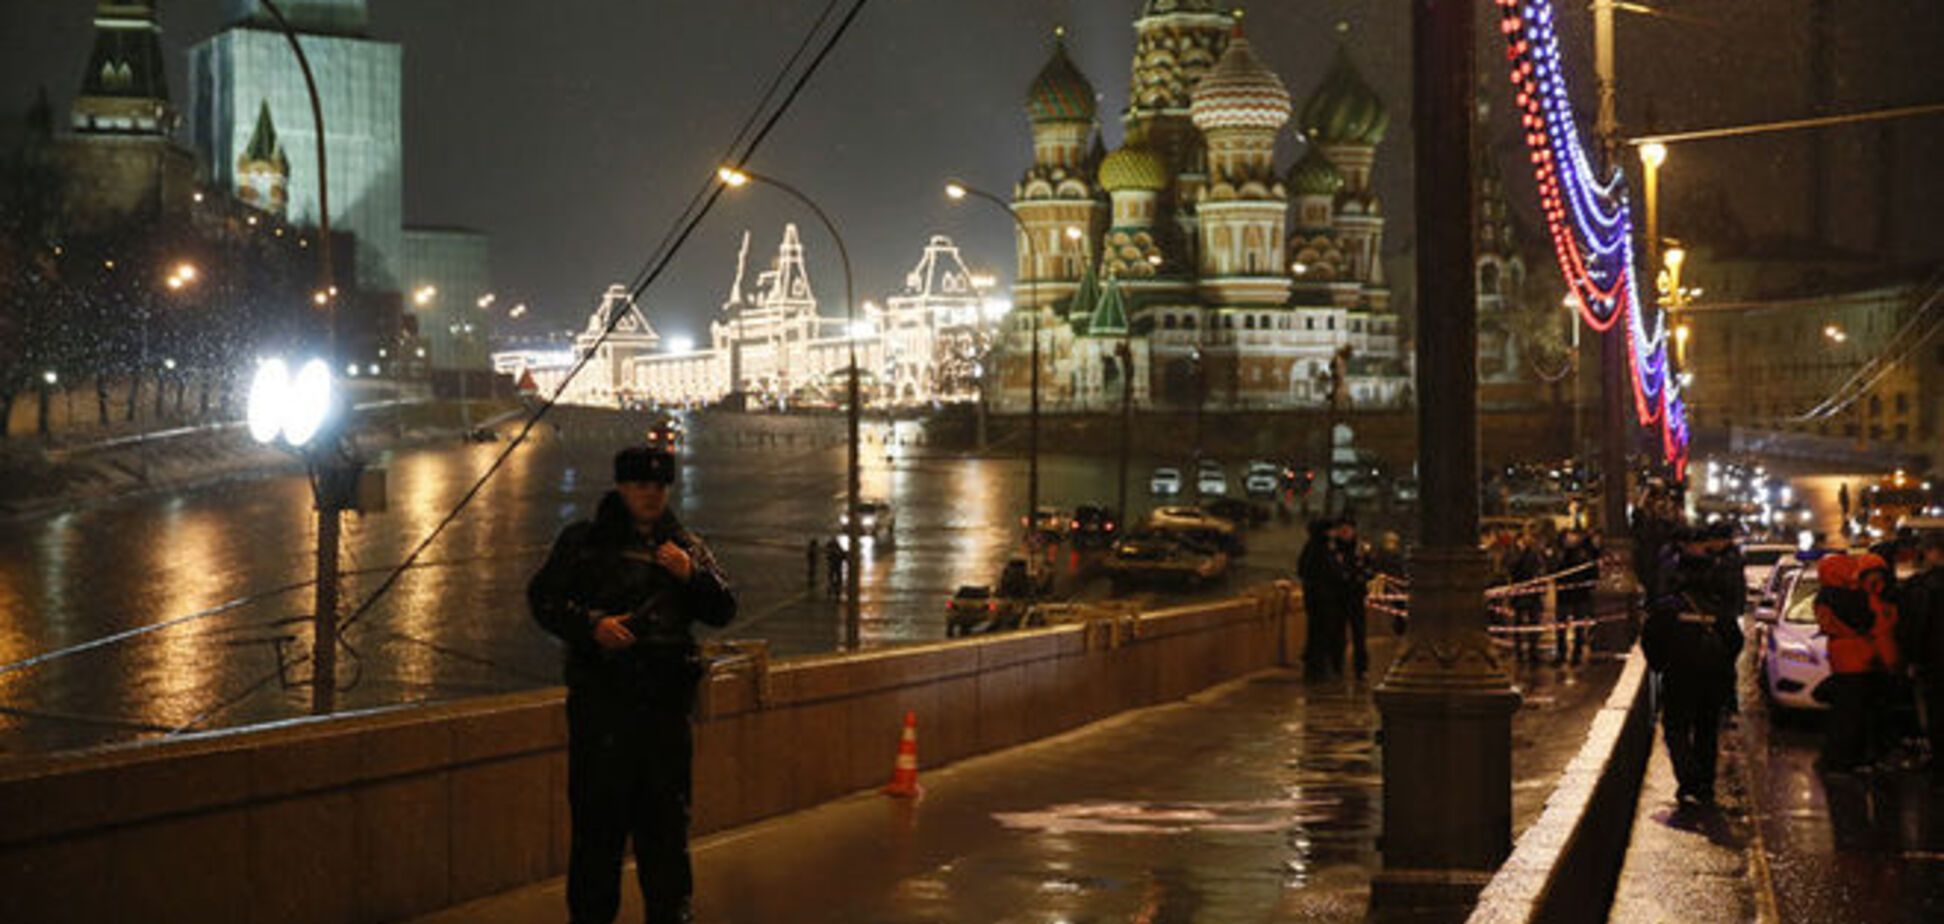 Сразу после убийства Немцова в центре Москвы прогремел 'огромный фейерверк' - Рабинович